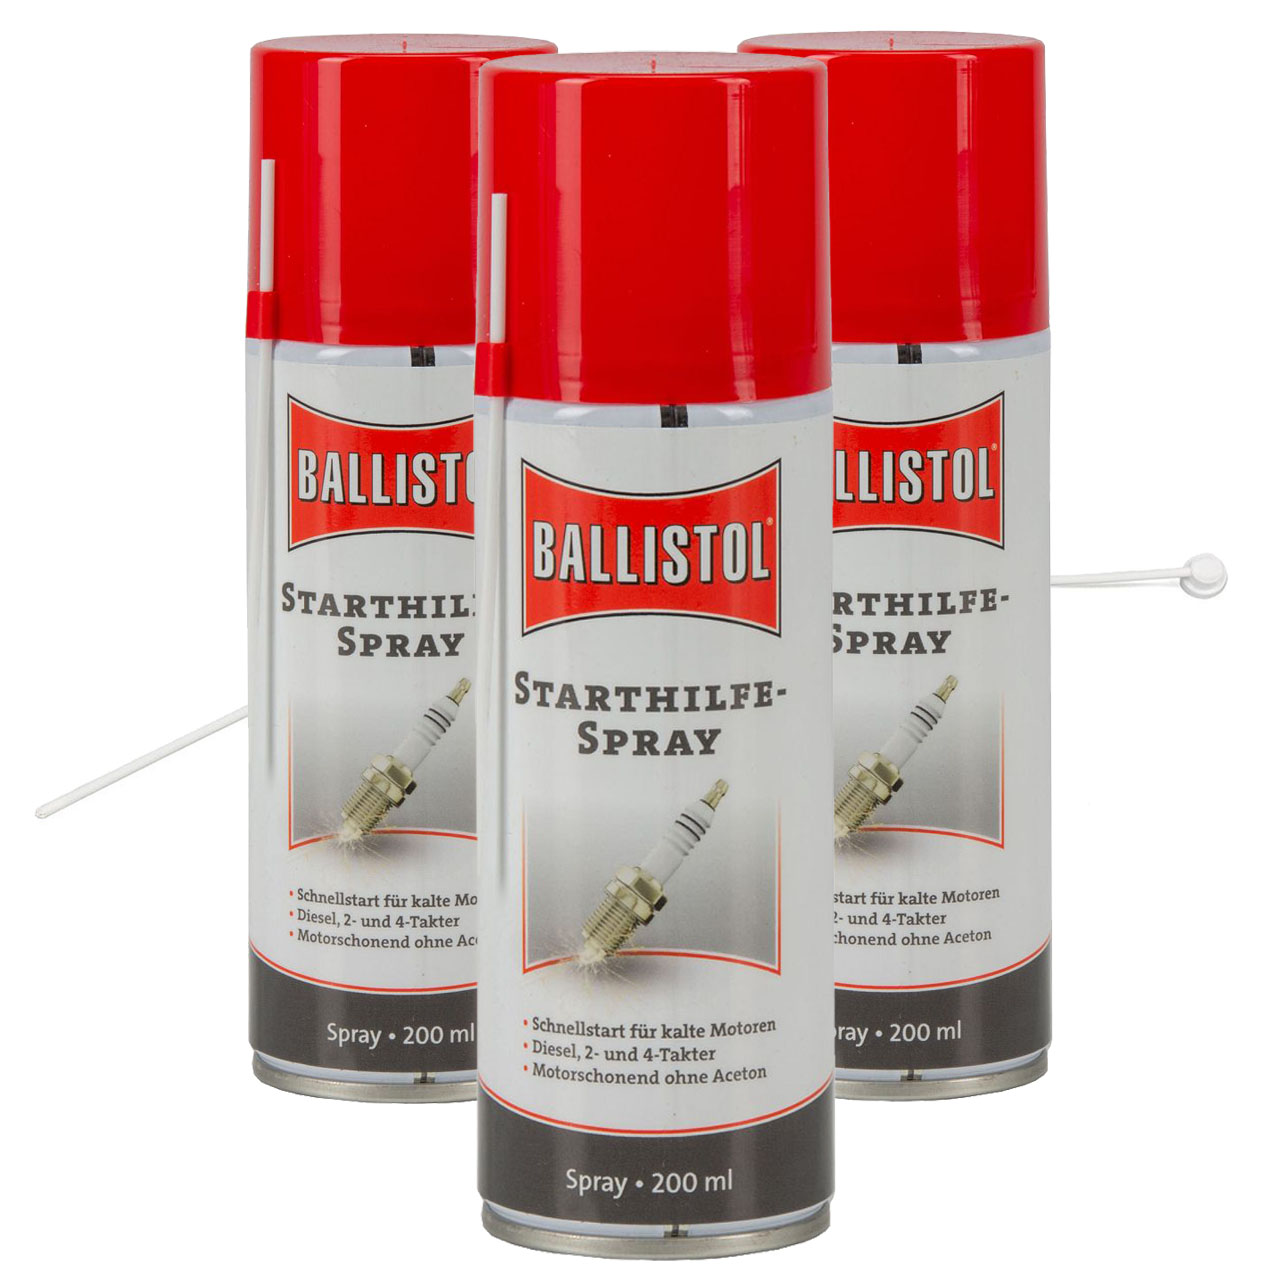 BALLISTOL Startwunder Spray Starthilfespray Starterspray 600ml + Verlängerung